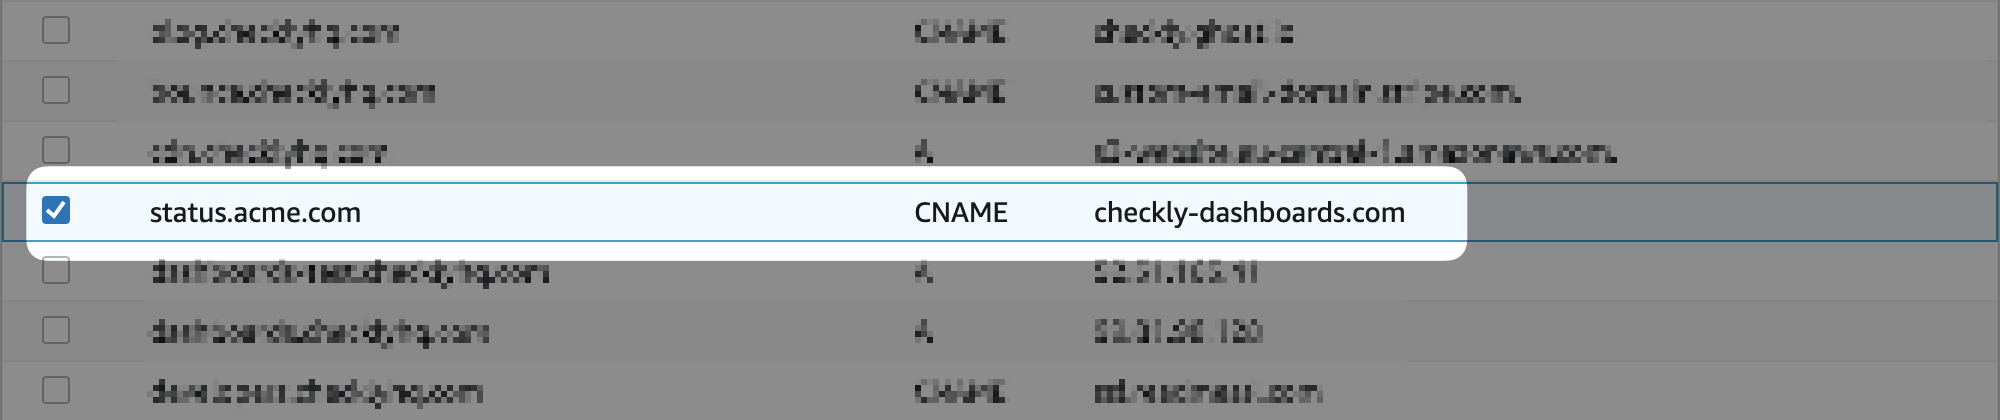 add cname to DNS provider